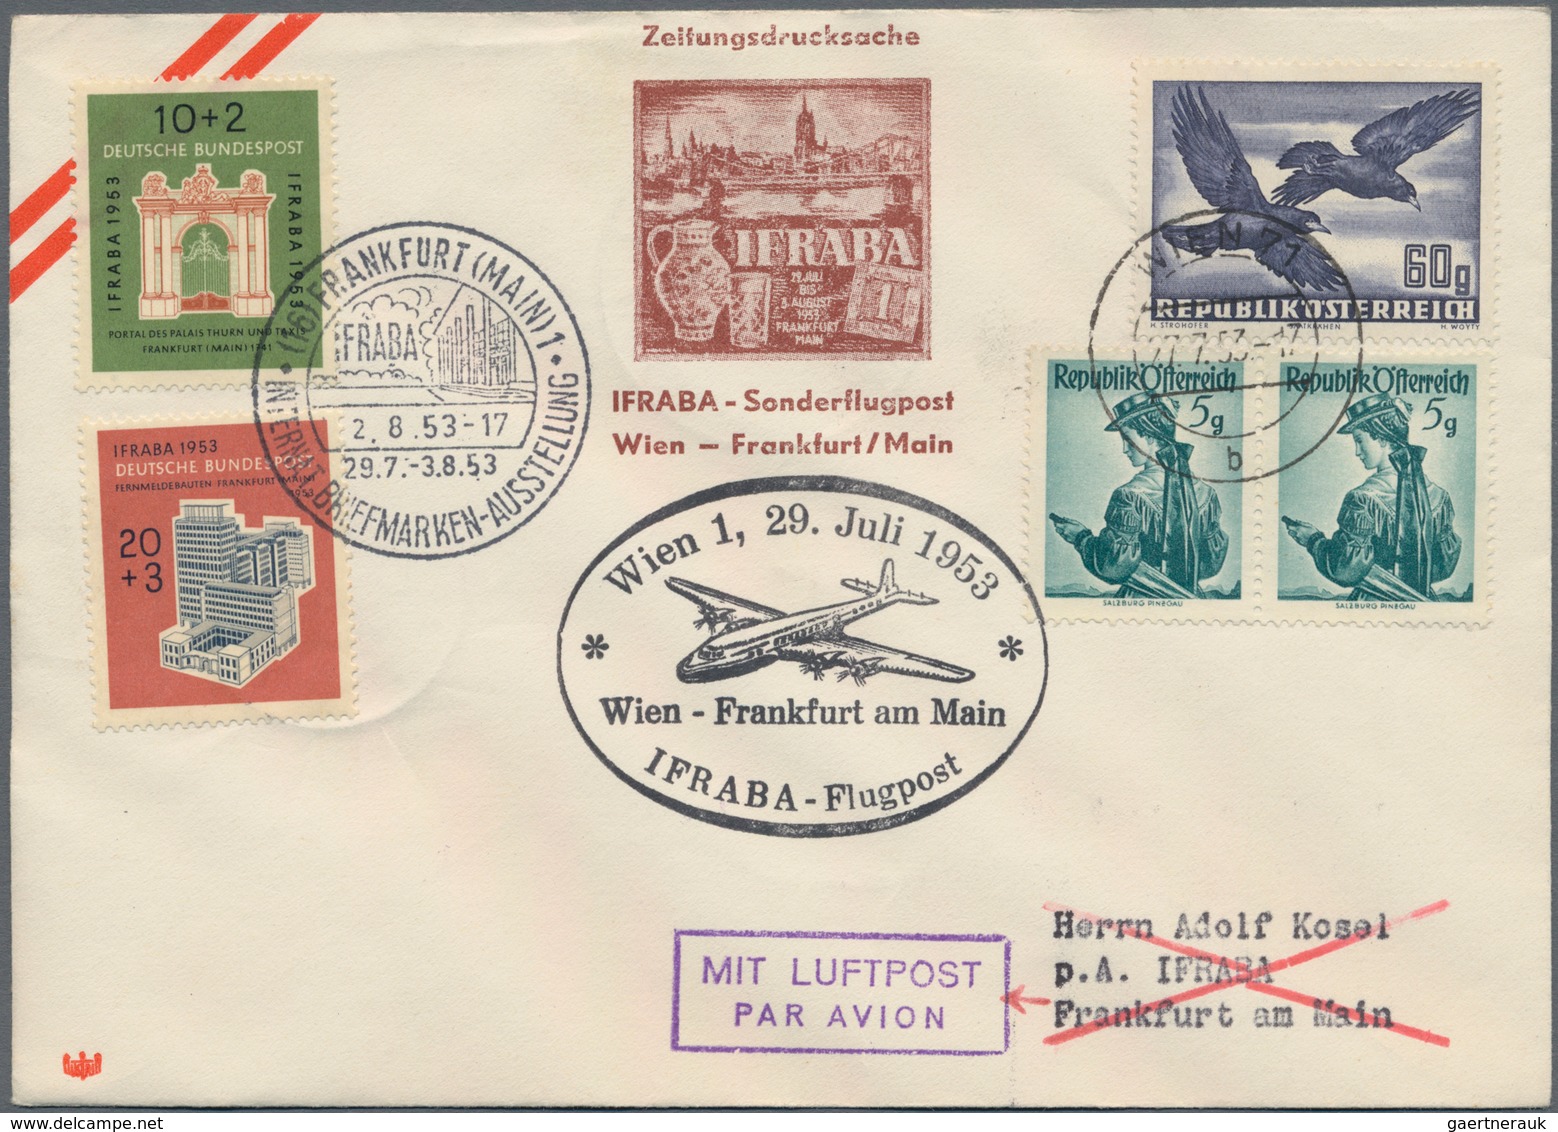 Flugpost Europa: 1946/1958, vielseitige Partie von ca. 85 Flugpost-Briefen und -Karten mit nur besse